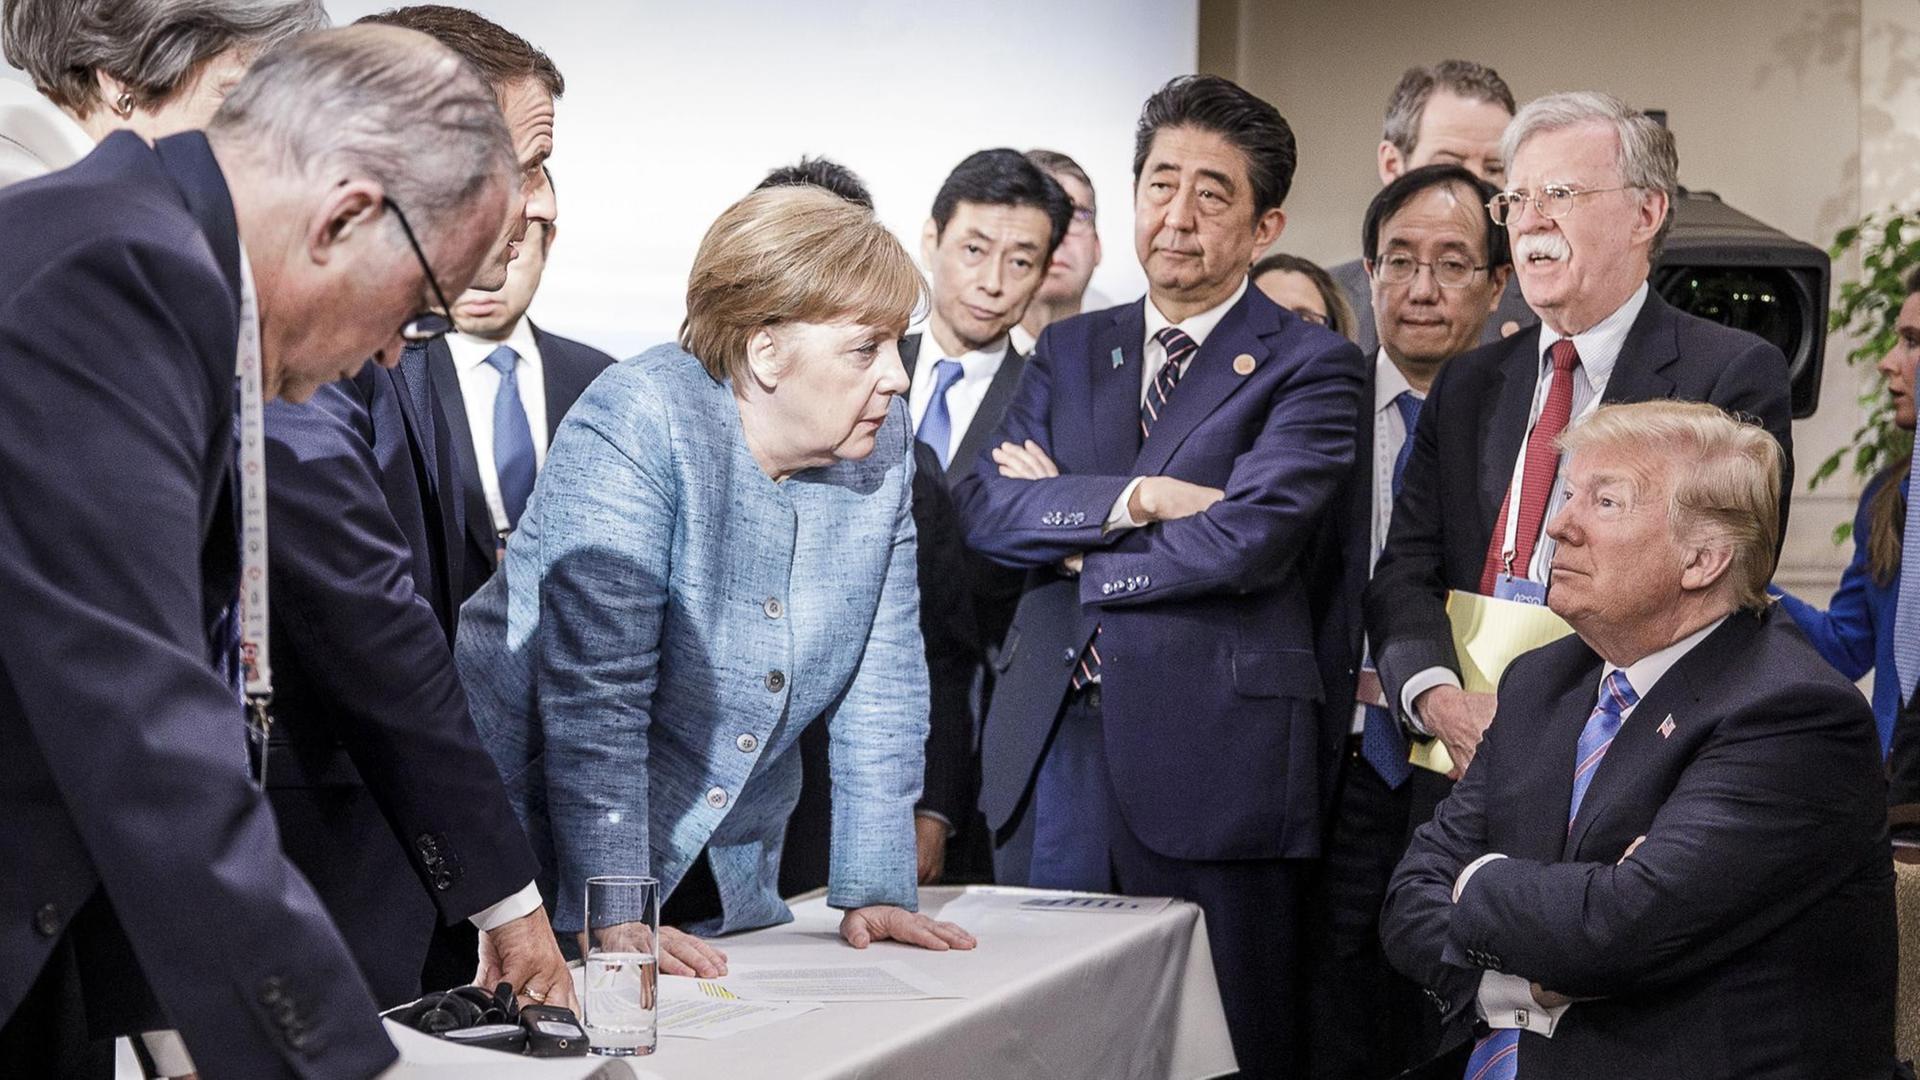 Merkel spricht mit Trump während Macron, Abe und Bolton zuhören.